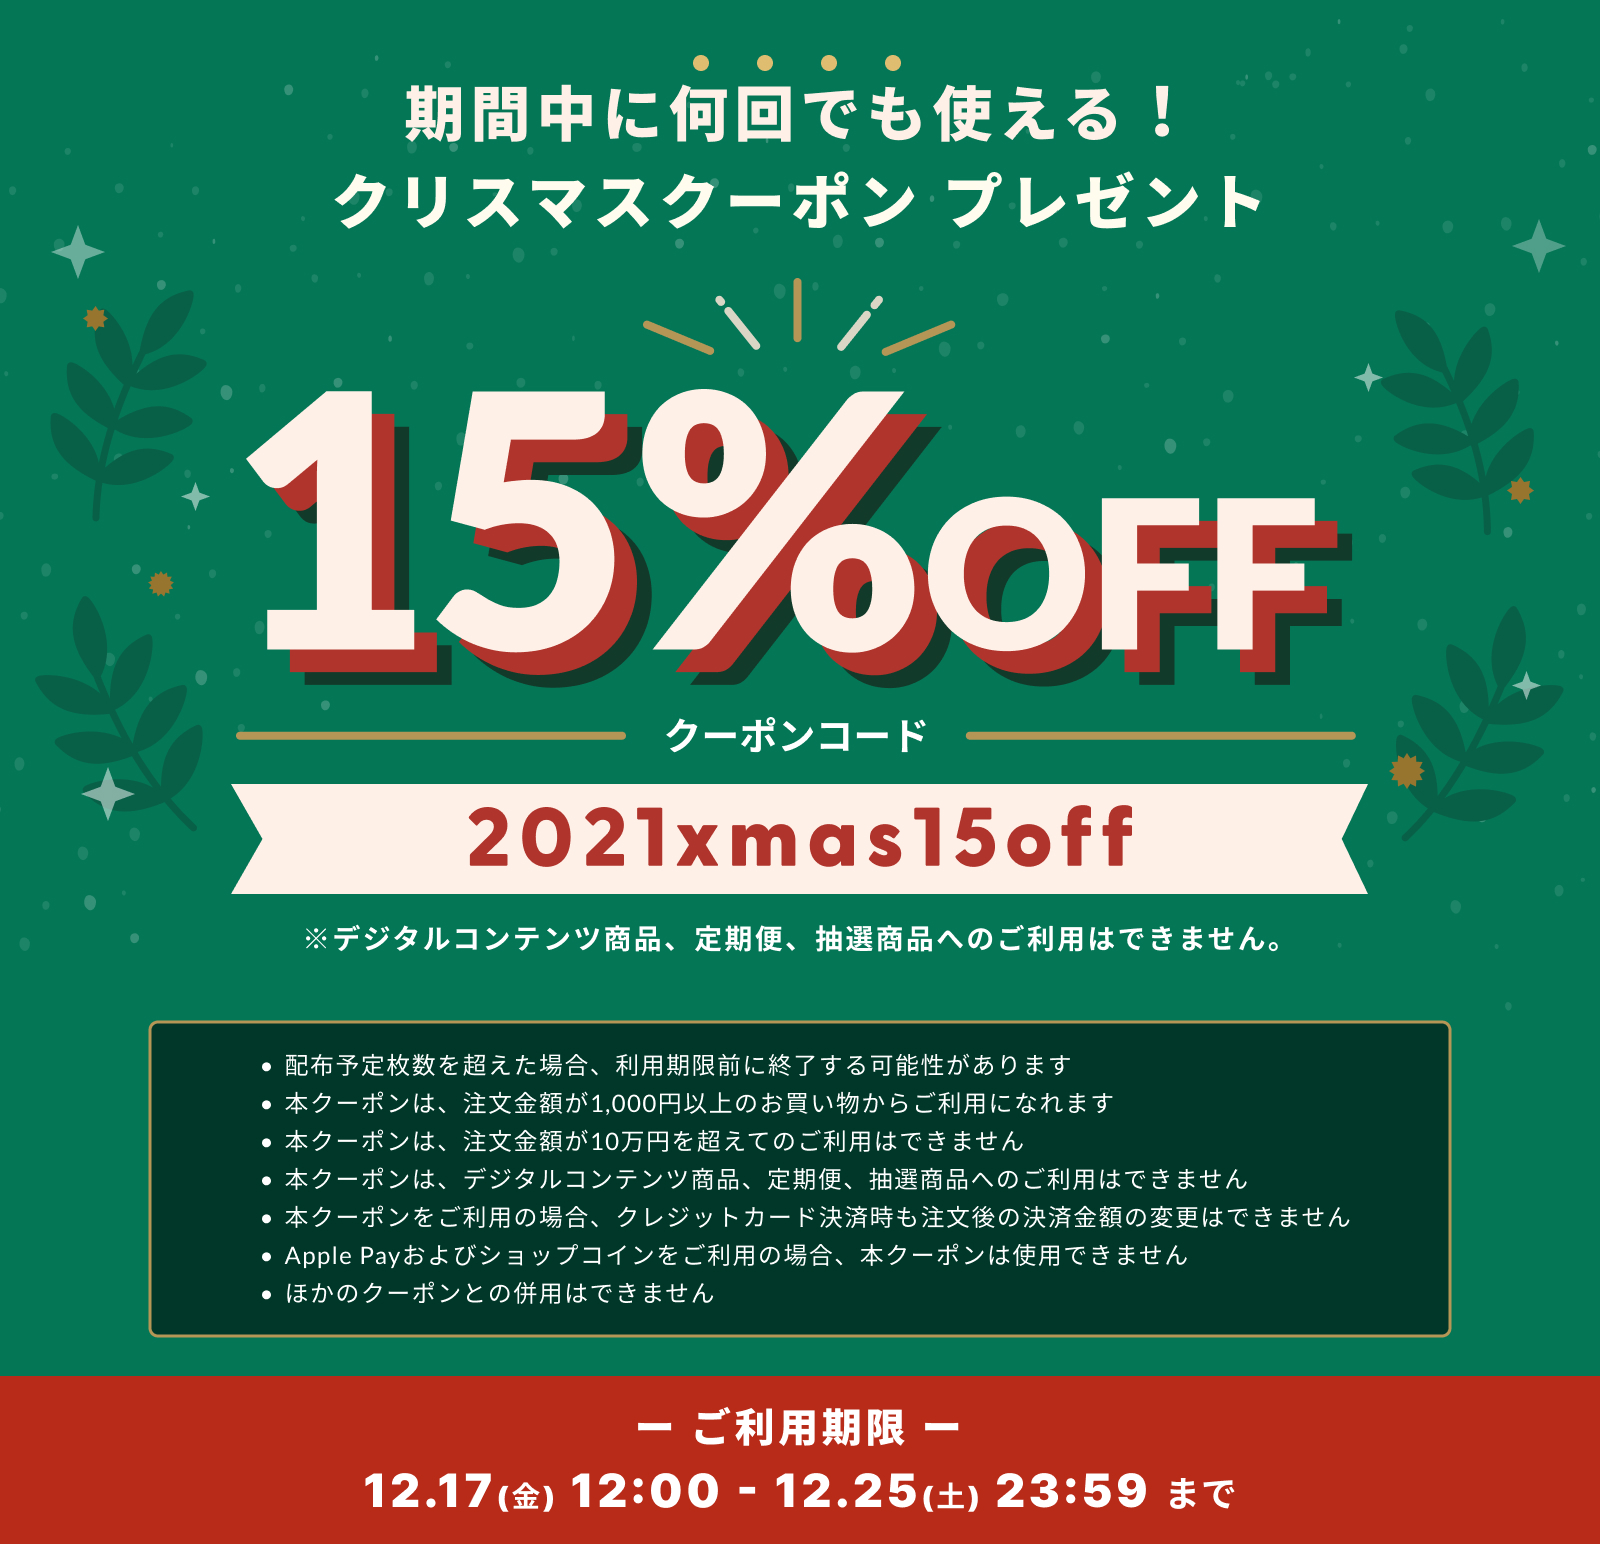 【COUPON!】12/17〜12/25で使える全品15%OFFのクリスマスクーポン配布中！